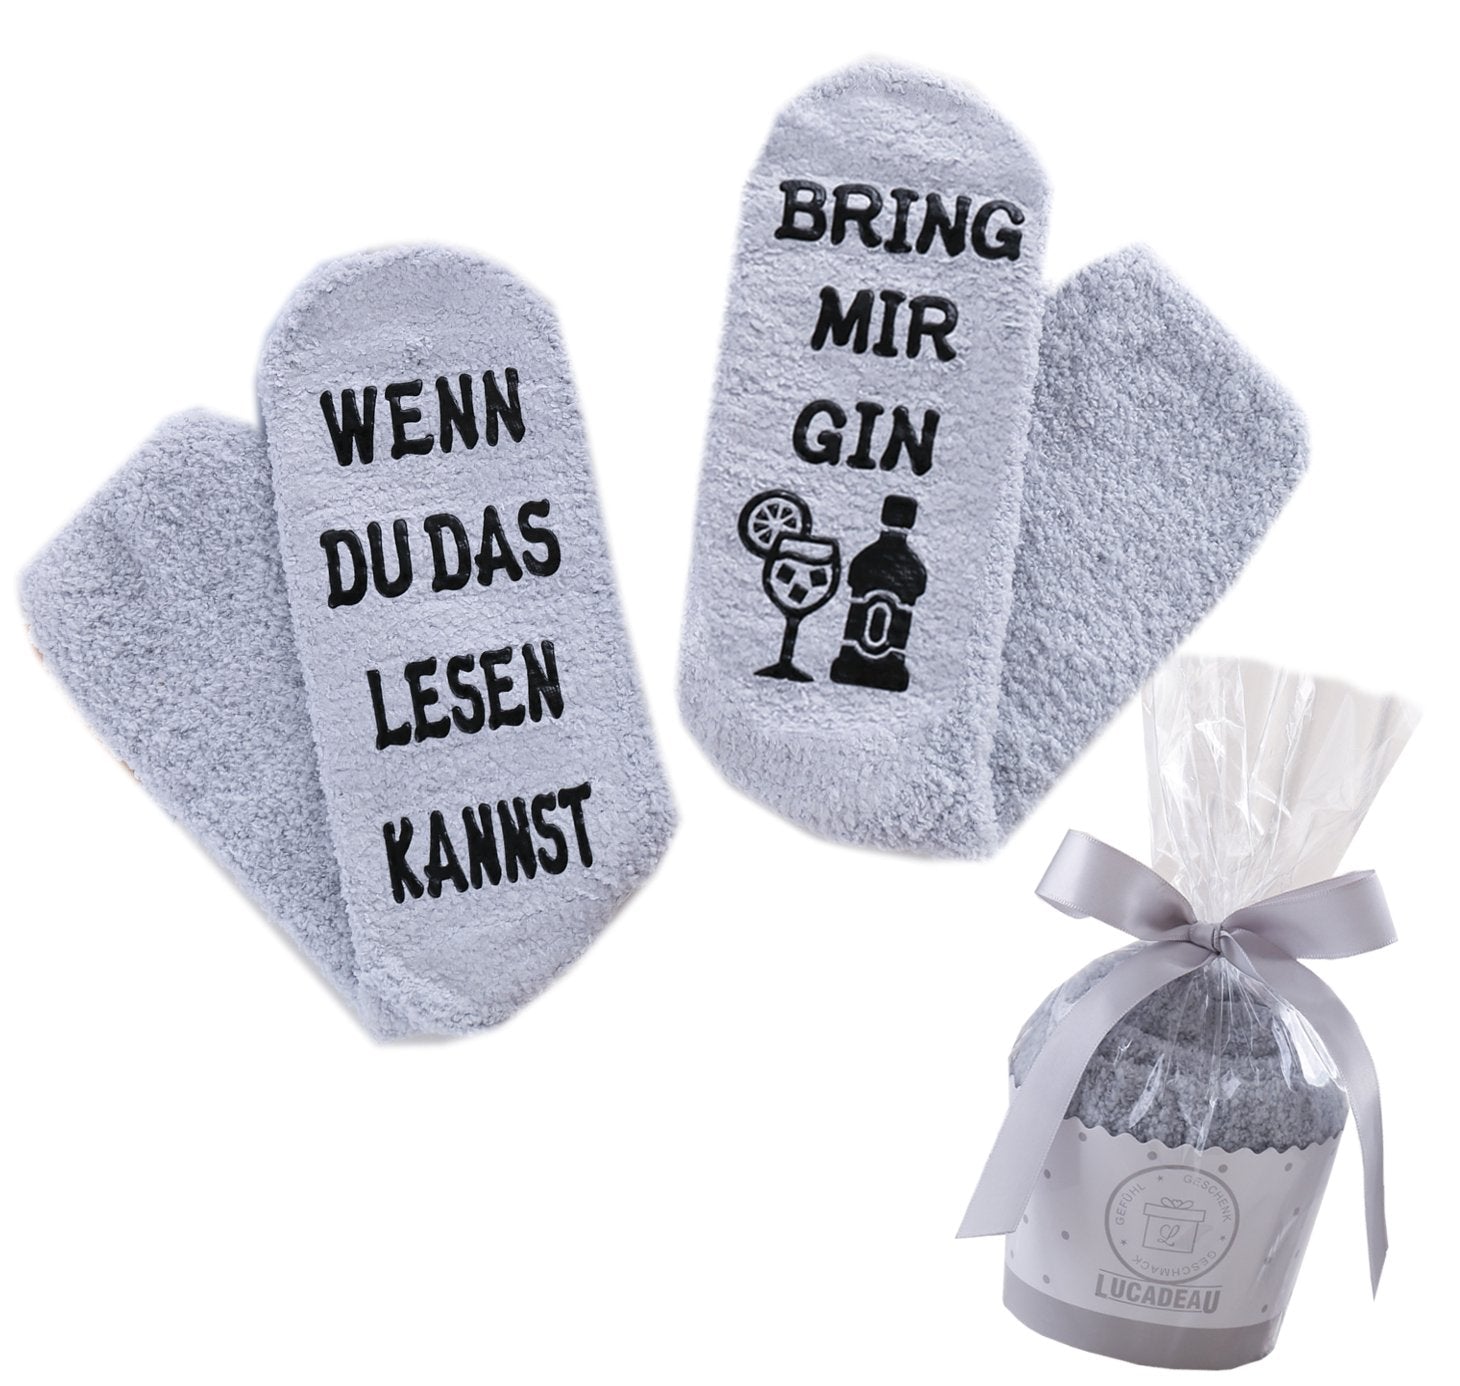 Gin Socken mit Spruch, WENN DU DAS LESEN KANNST, BRING MIR GIN, Kuschelsocken, Geburtstagsgeschenke für Frauen, 36-43